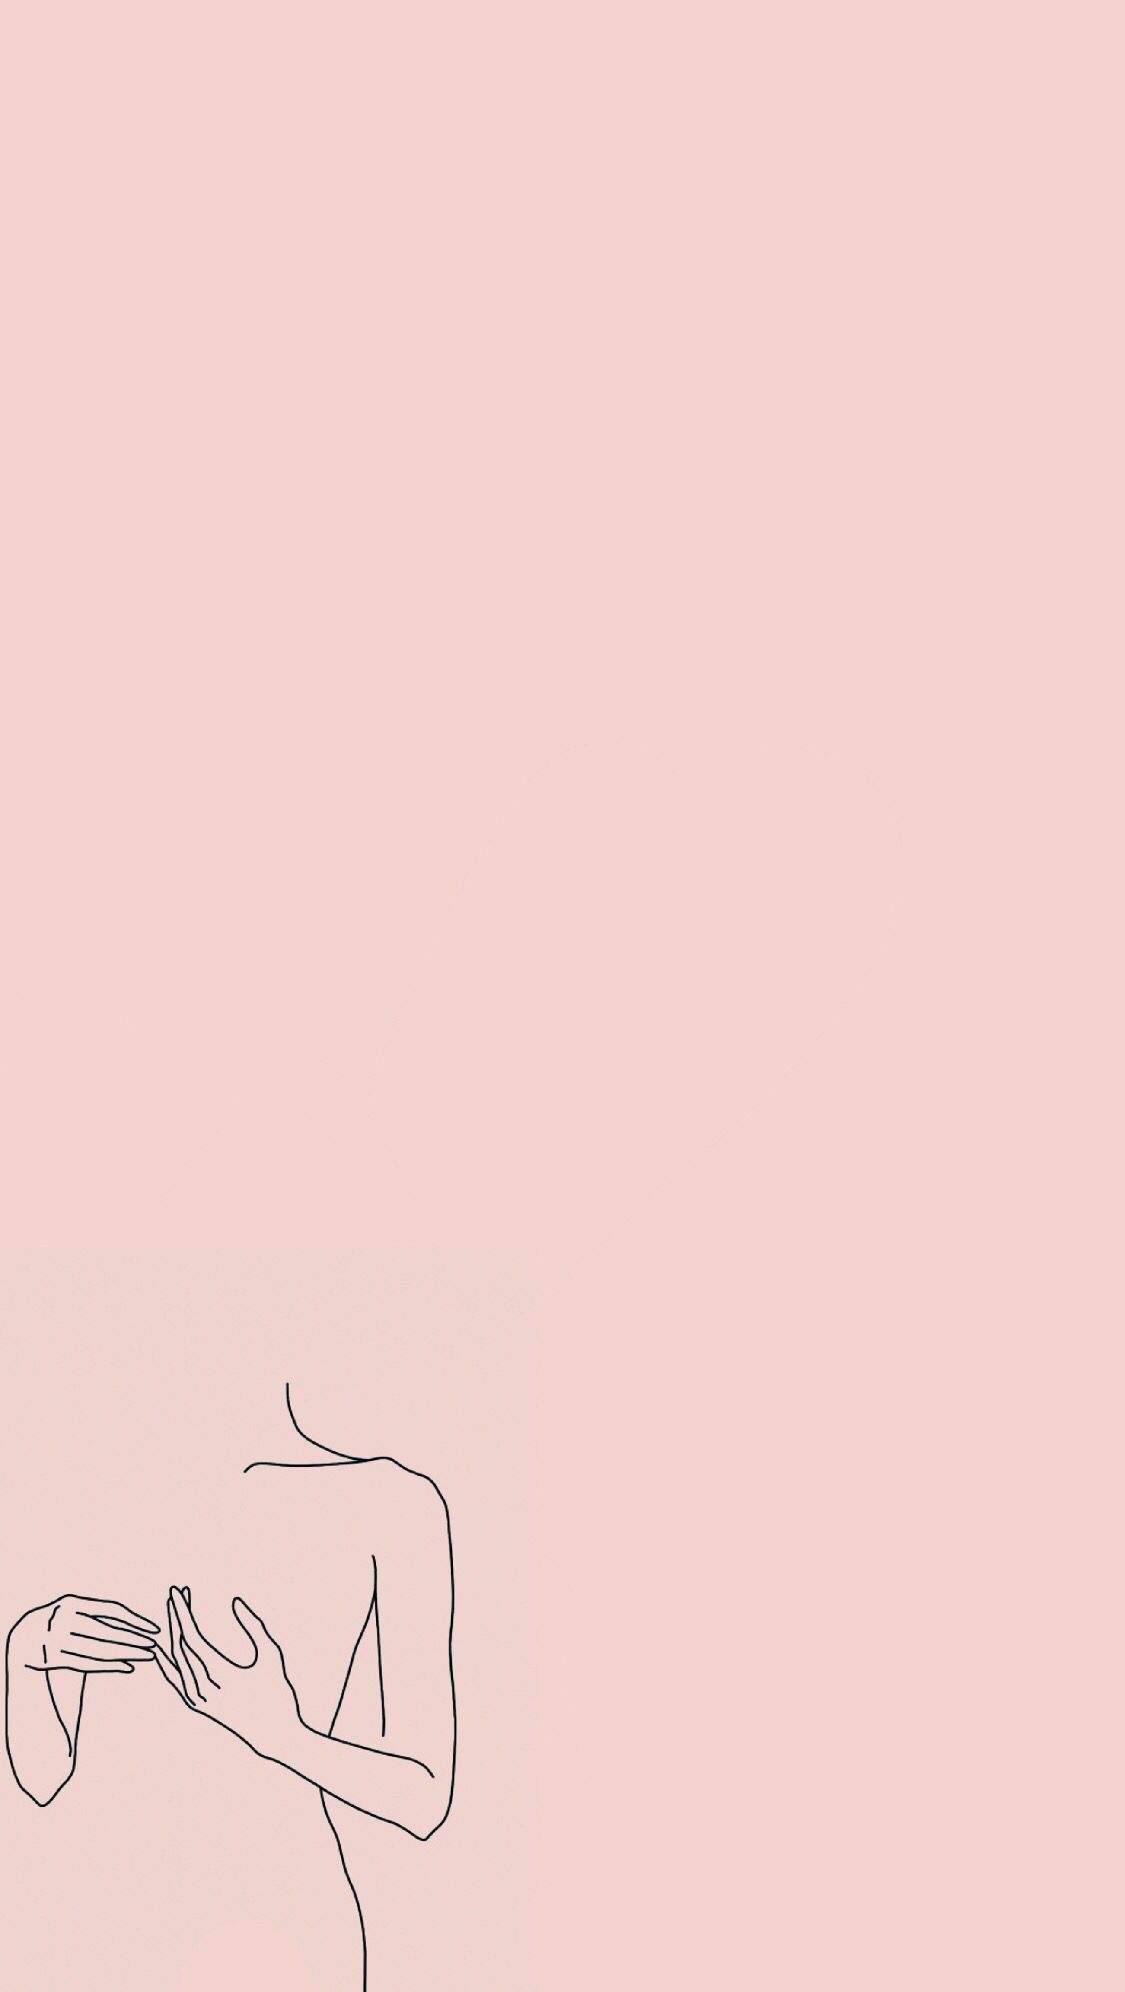 Line Arts Wallpaper. Minimalist wallpaper, Aesthetic pastel wallpaper, Pastel pink aesthetic